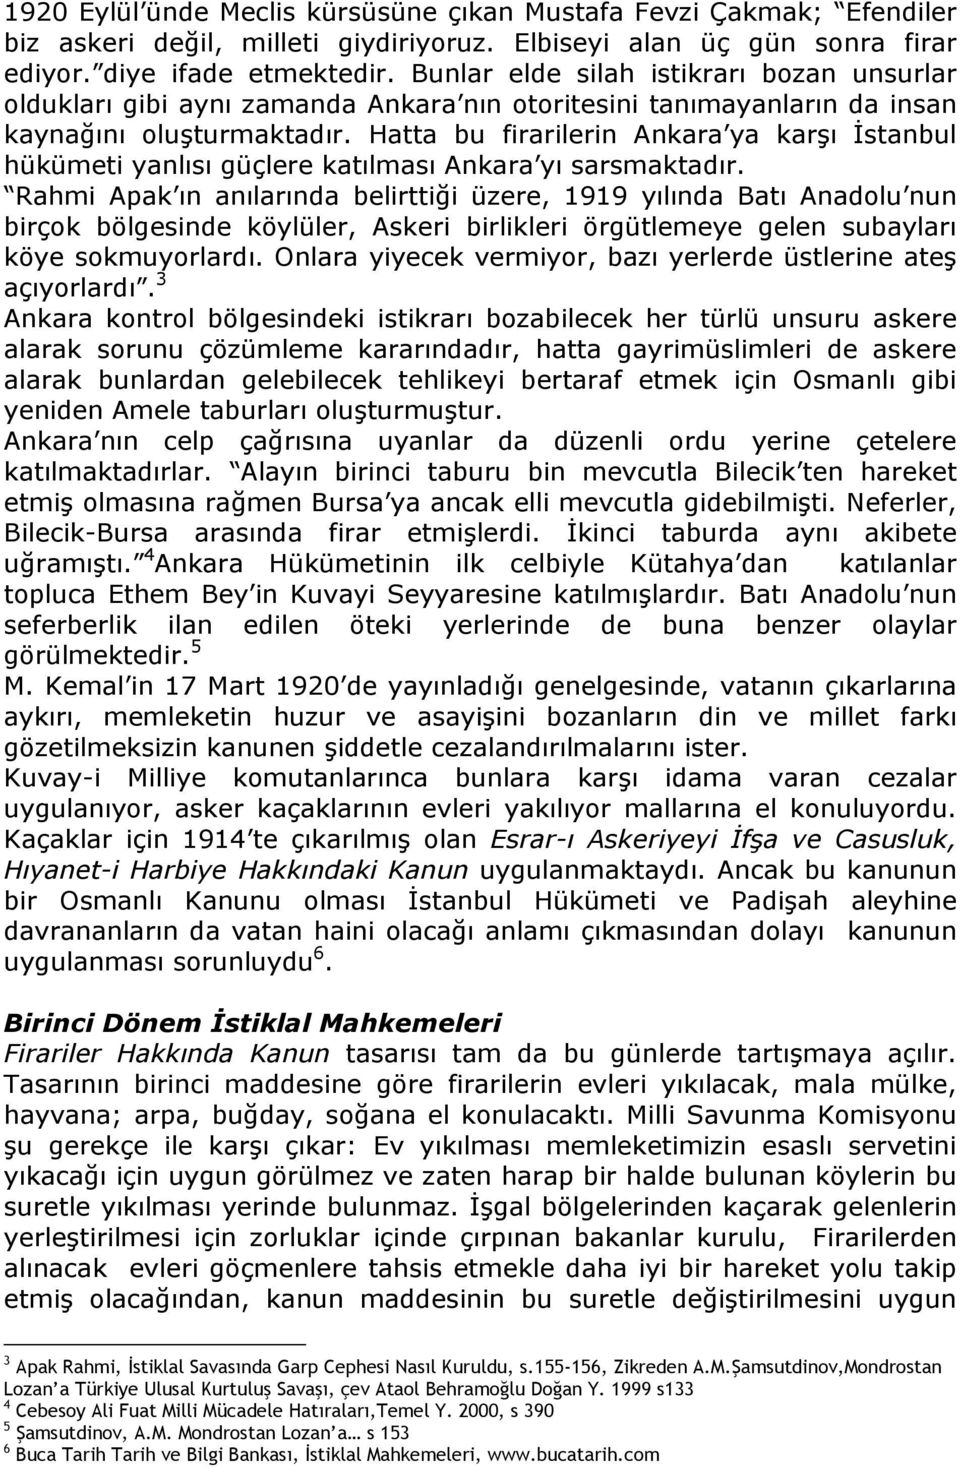 Hatta bu firarilerin Ankara ya karşı İstanbul hükümeti yanlısı güçlere katılması Ankara yı sarsmaktadır.